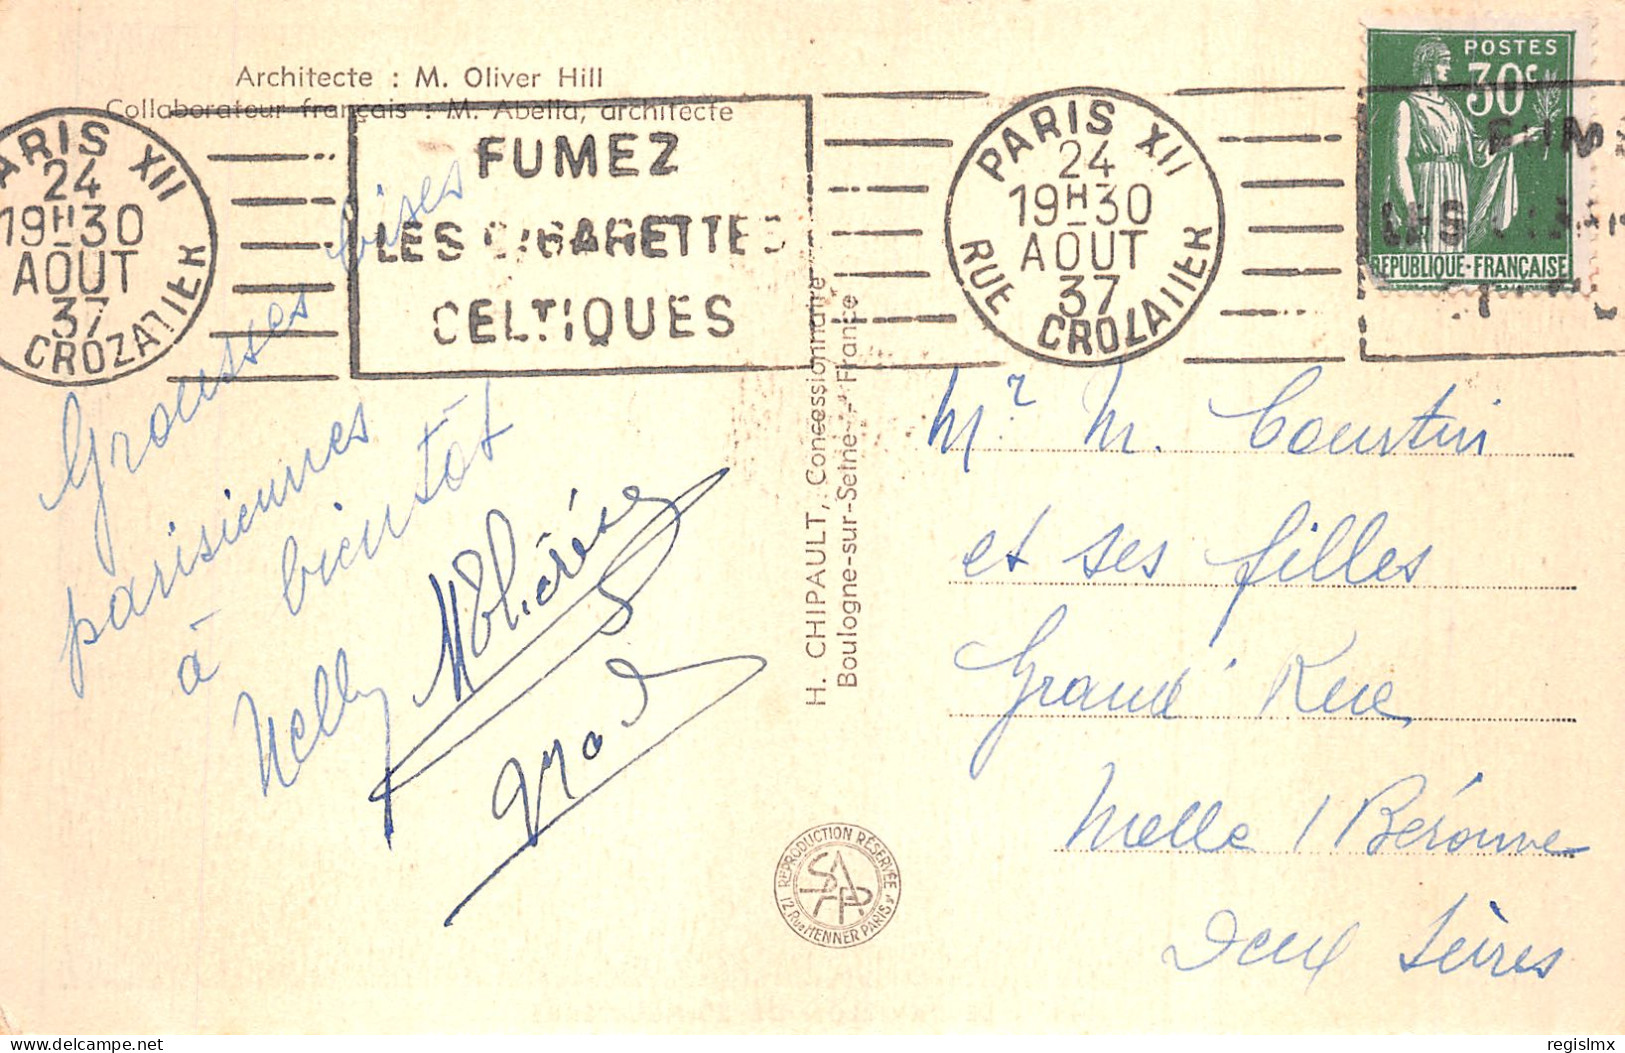 75-PARIS EXPOSITION INTERNATIONALE 1937 PAVILLON DE L ANGLETERRE-N°T1044-A/0371 - Ausstellungen